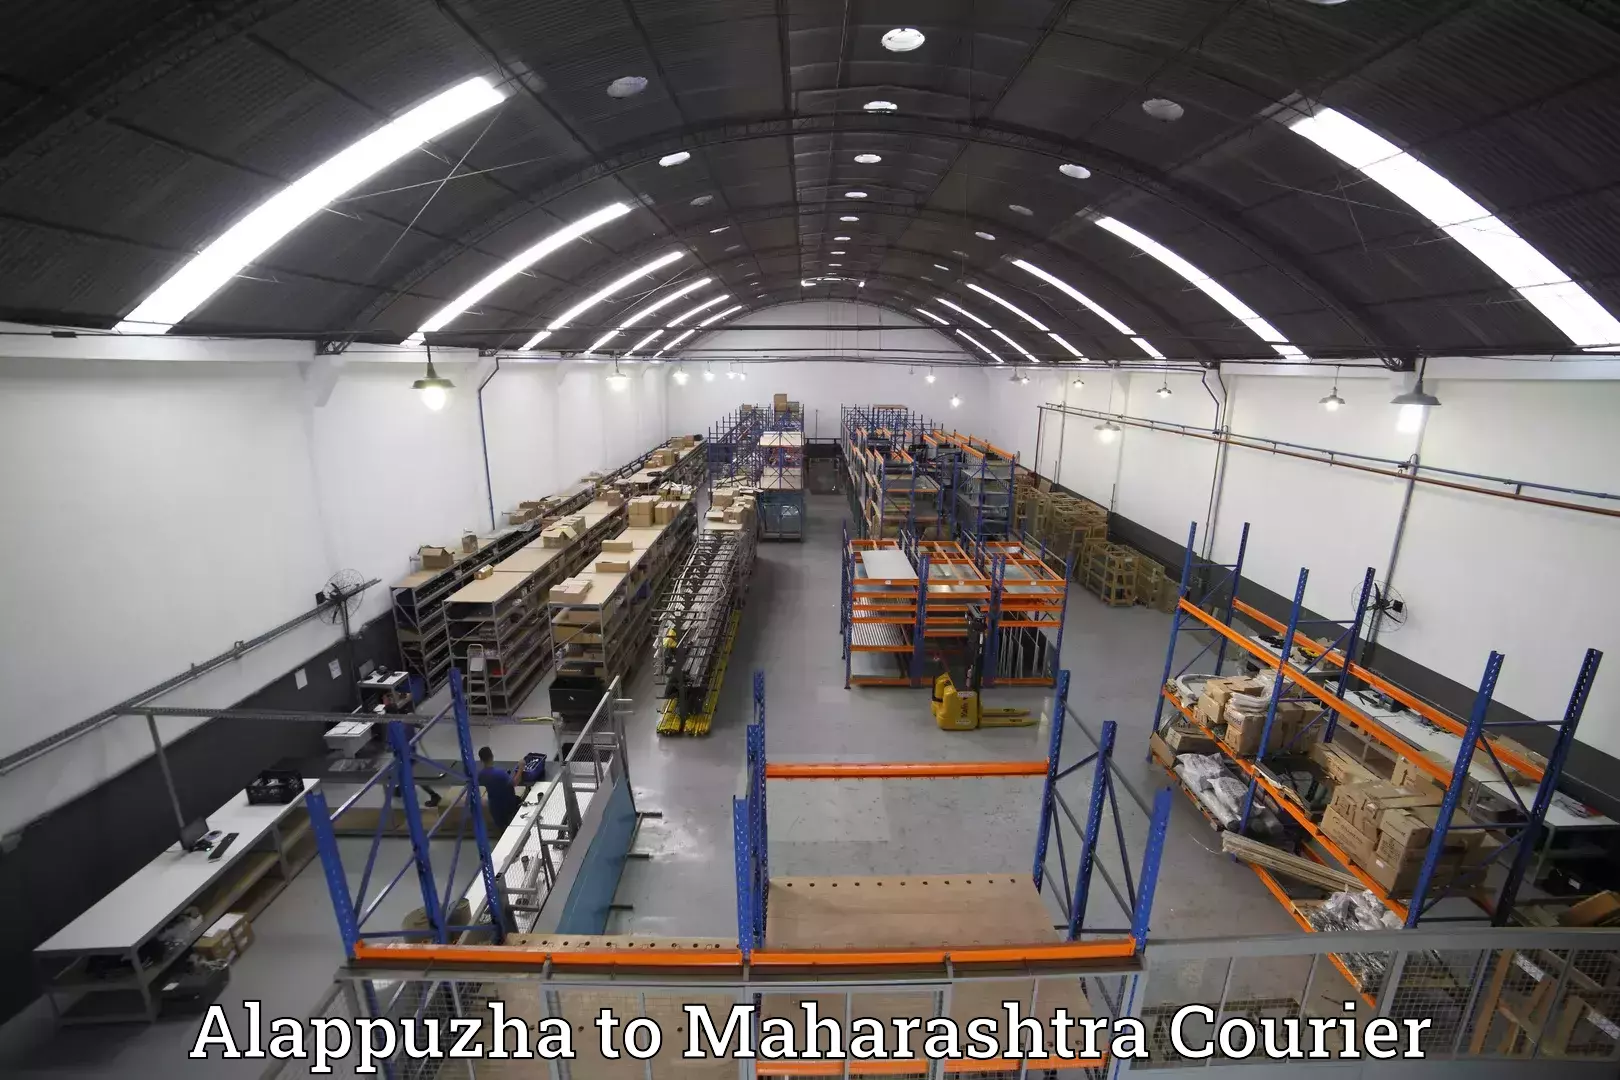 Luggage shipment specialists Alappuzha to Wadki